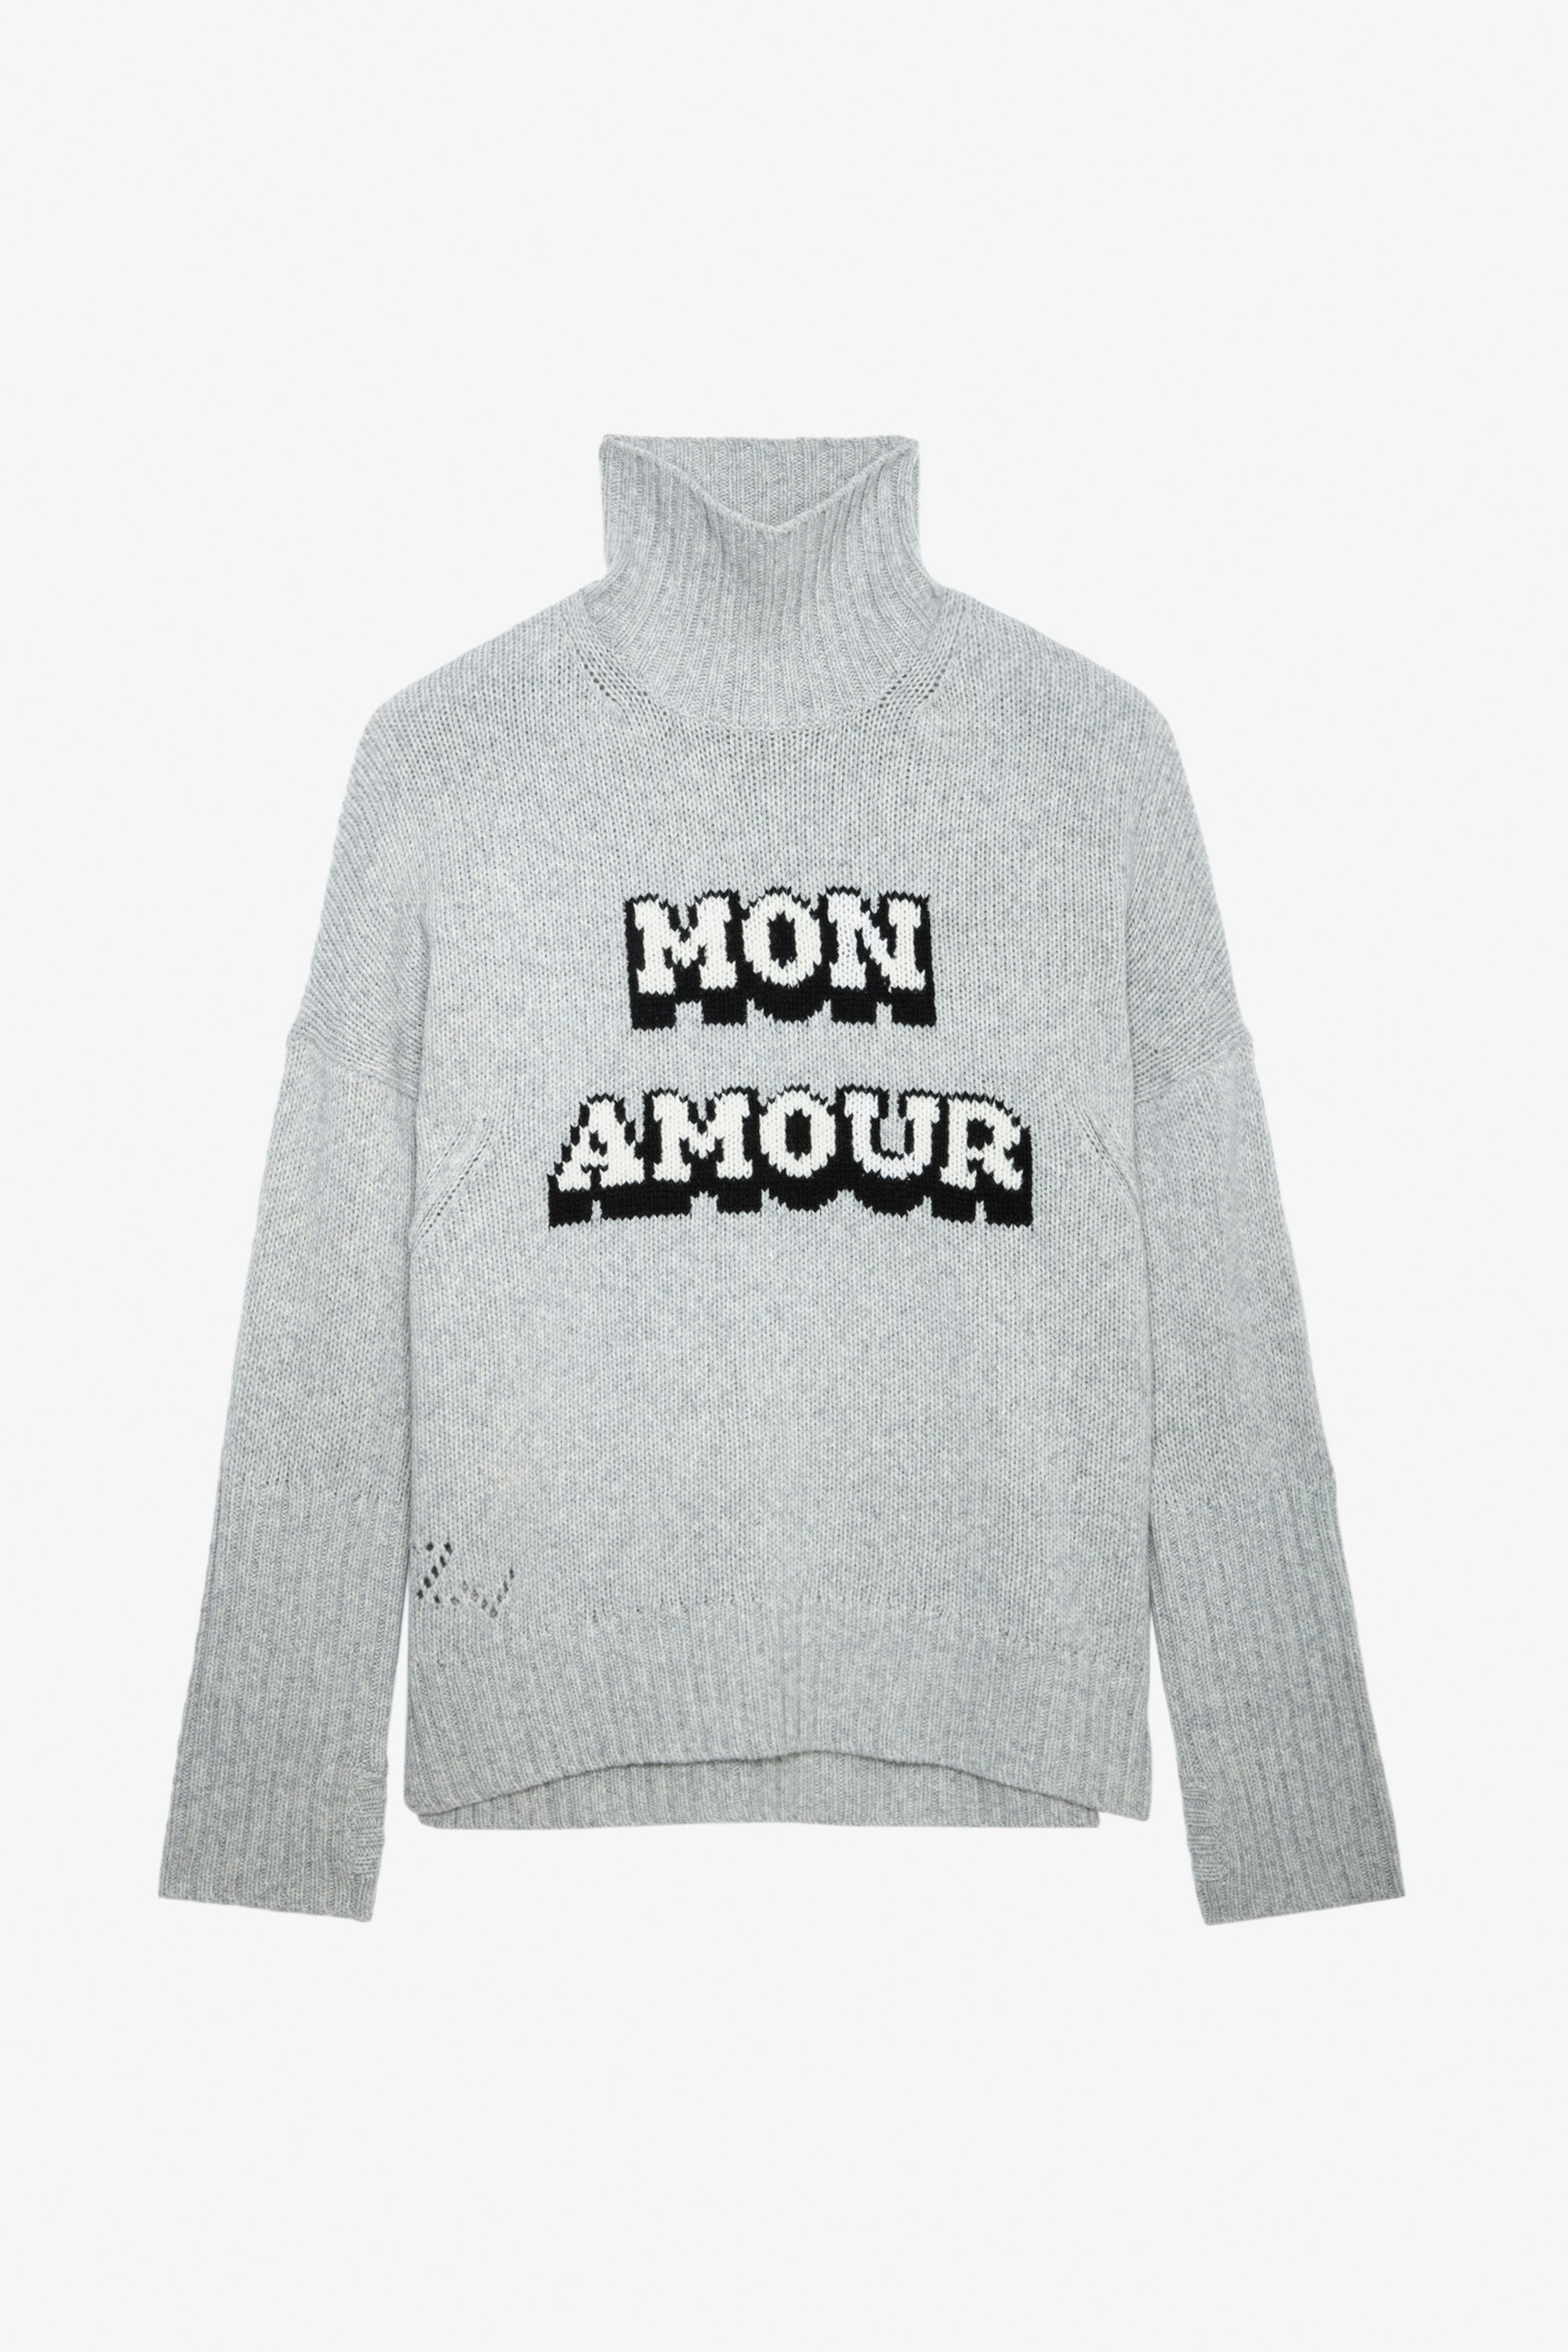 Jersey Alma Mon Amour - Jersey gris de lana merina con cuello alto y mensaje «Mon Amour» de jacquard intarsia para mujer.